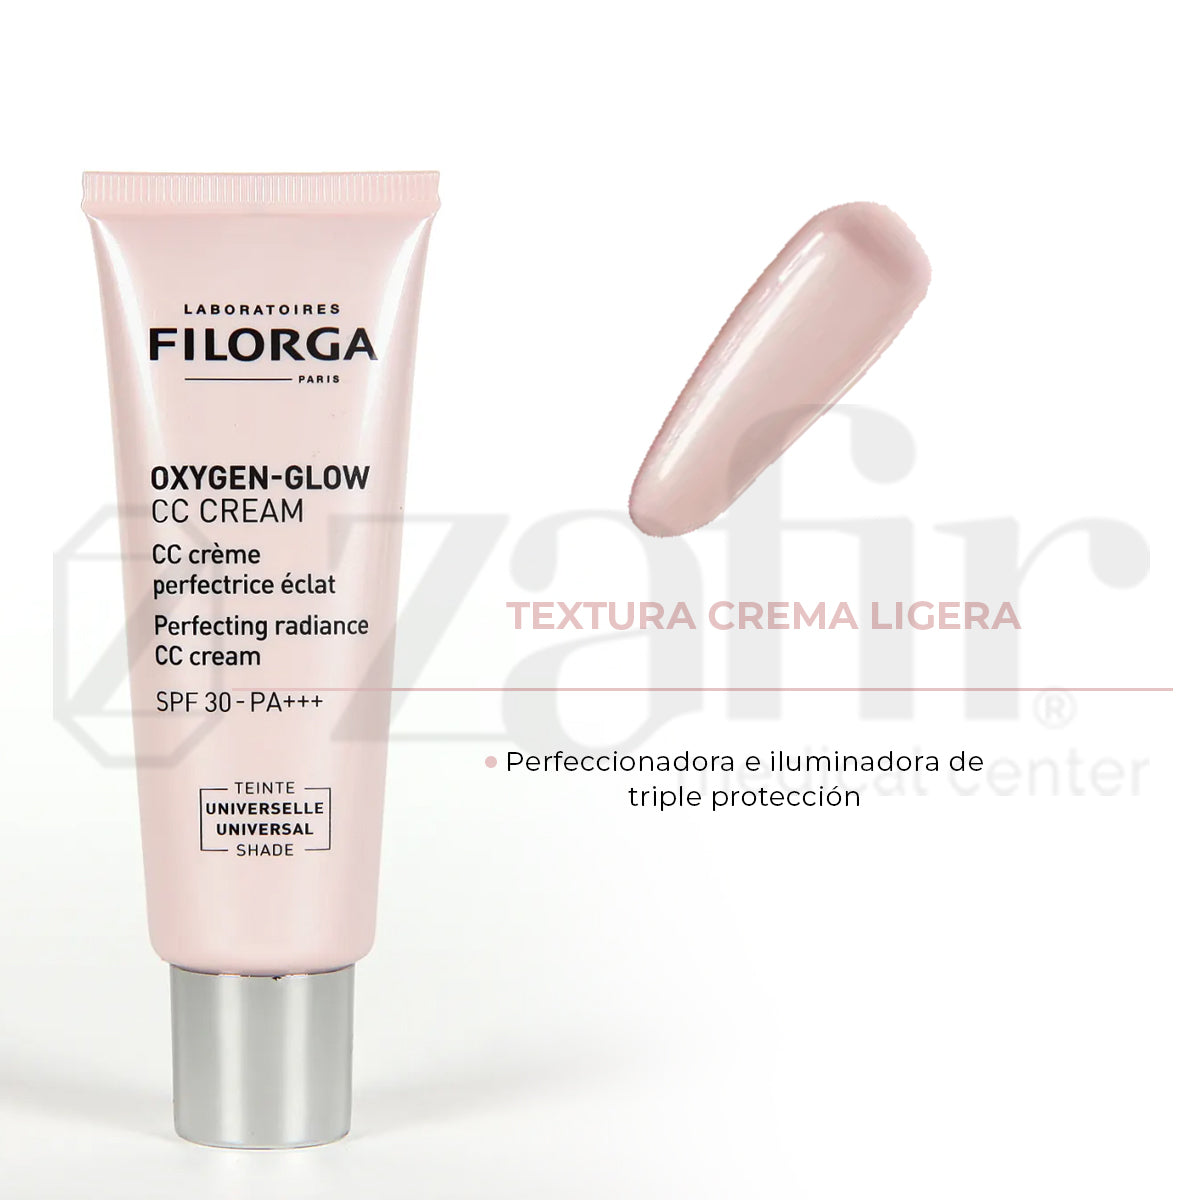 Filorga - Oxygen-Glow CC Cream (40 ml)